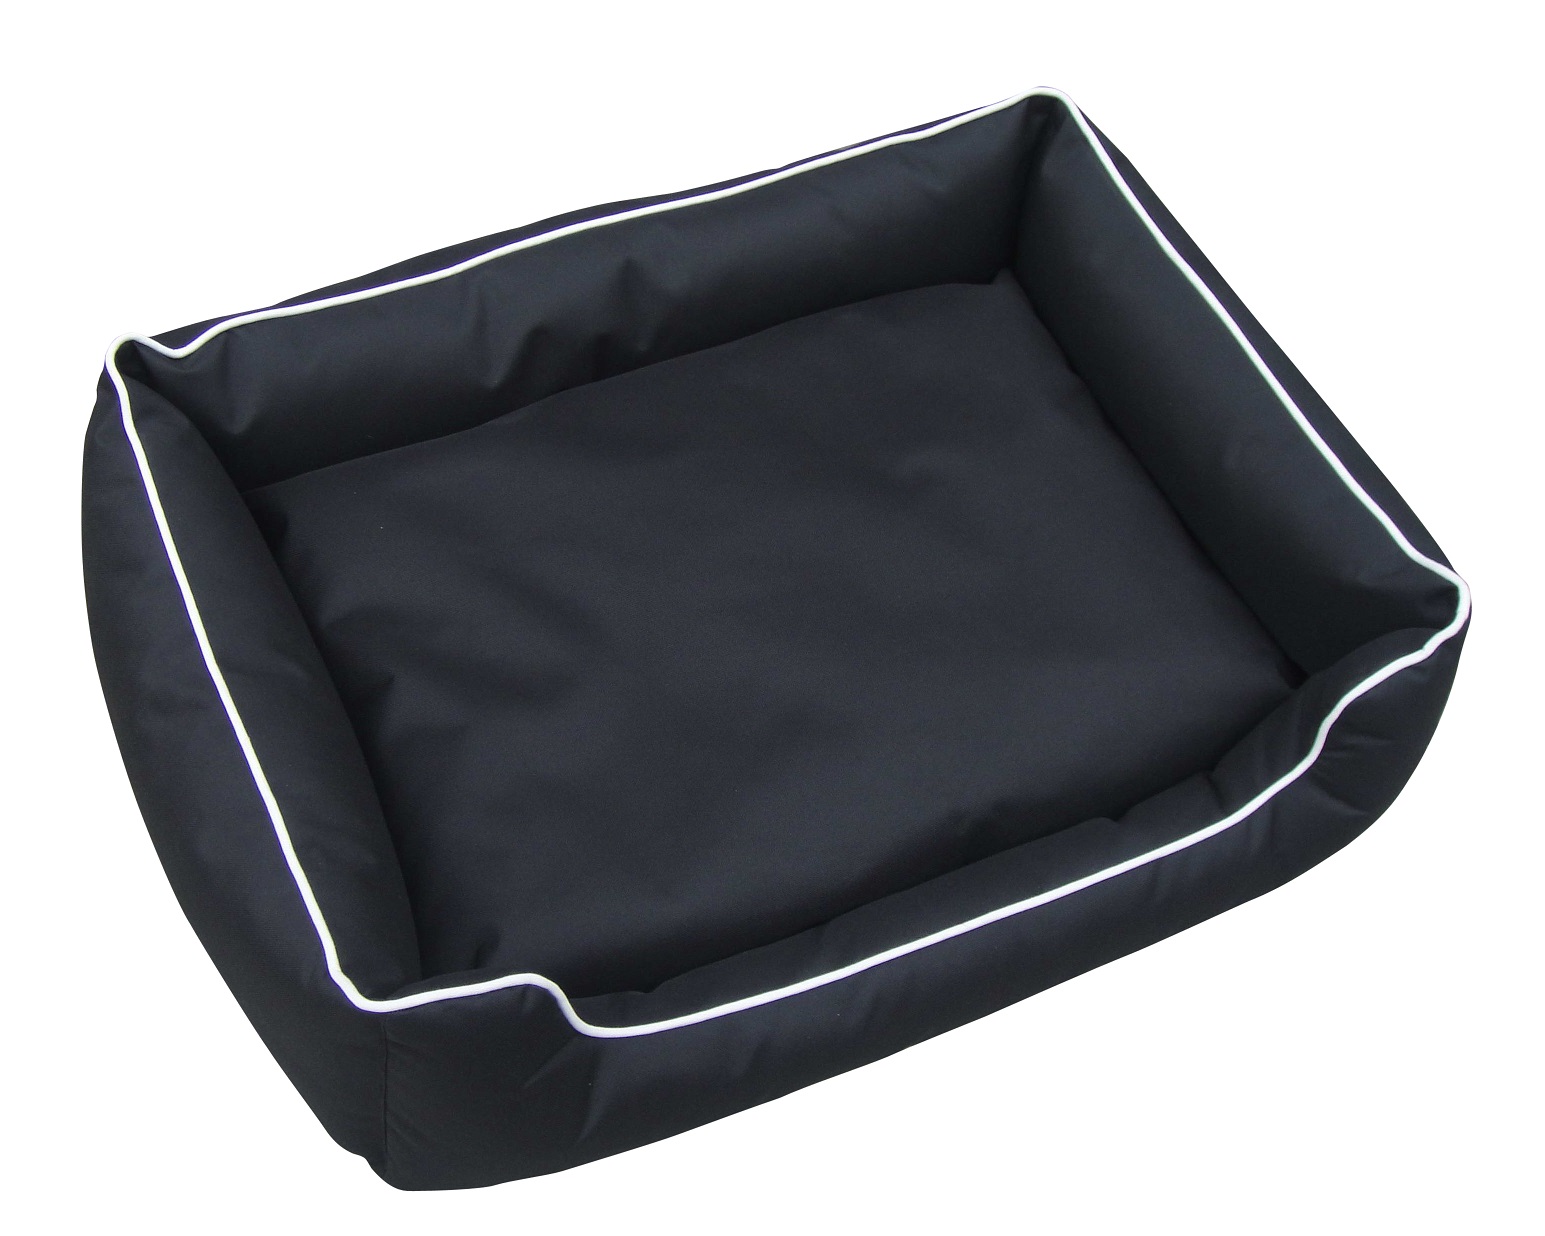 100cm x 80cm Heavy Duty Waterproof Dog Bed